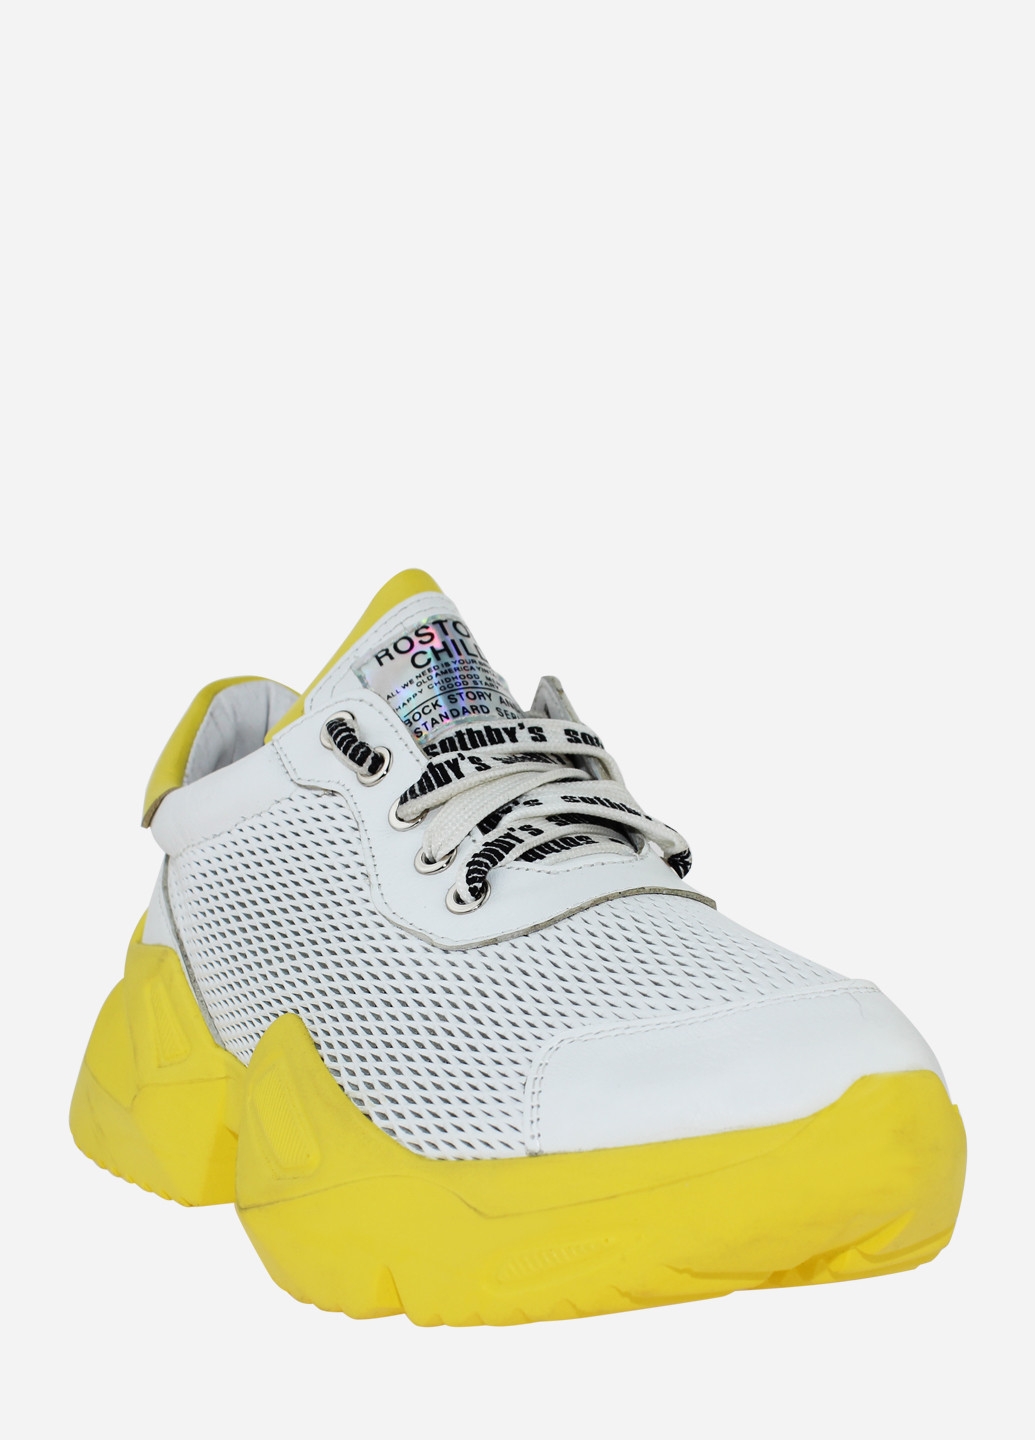 Білі осінні кросівки rsm-514 білий-жовтий Sothby's